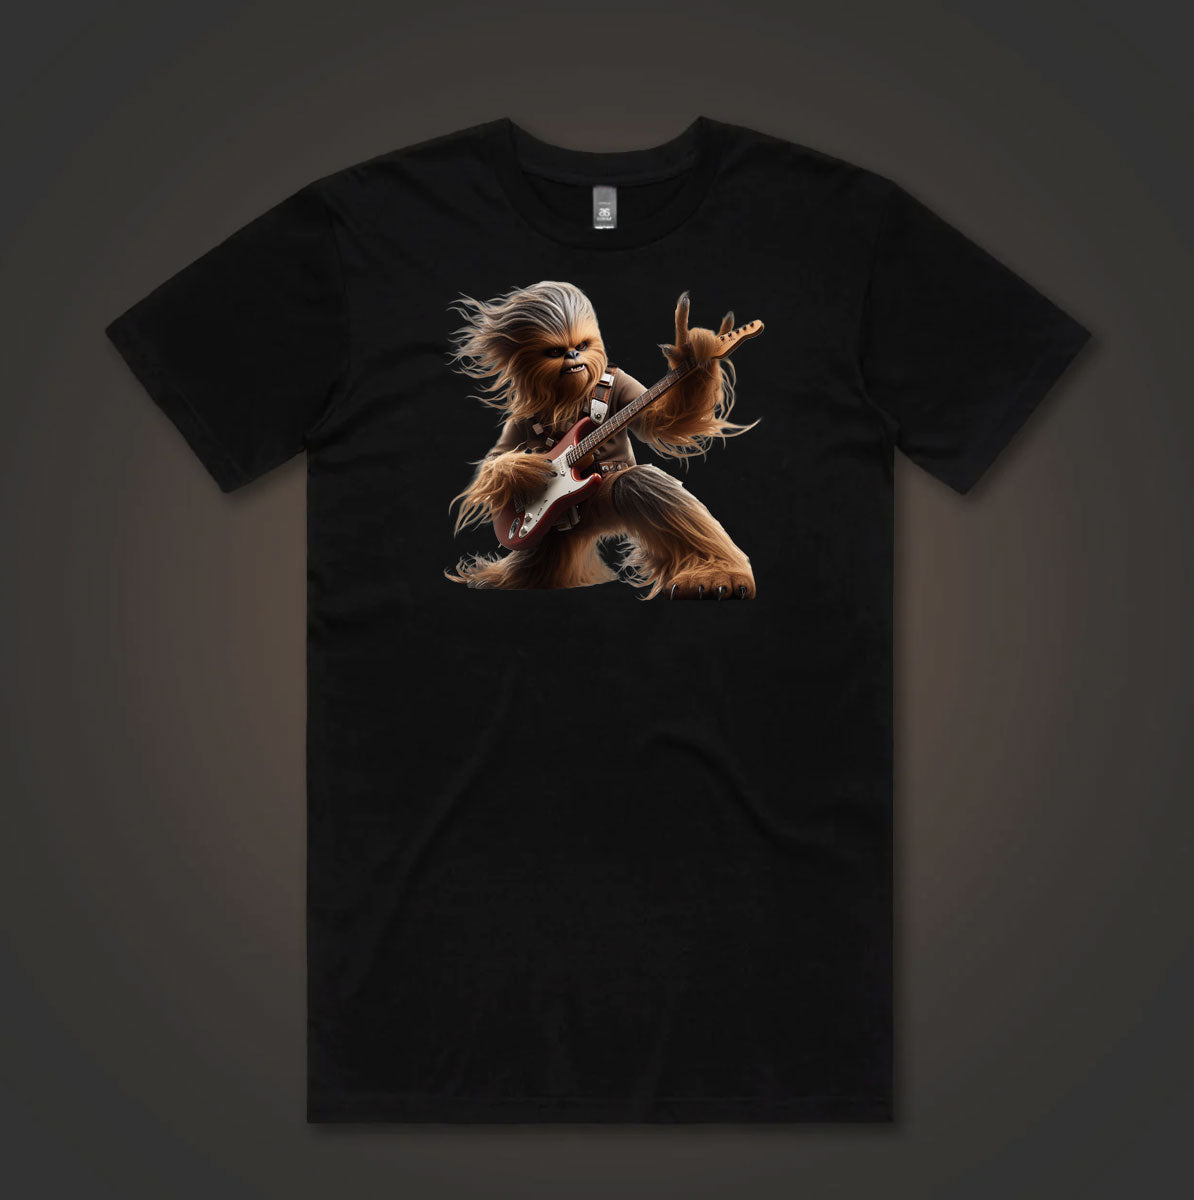 Wookie Rock Guitar Musician T-Shirt